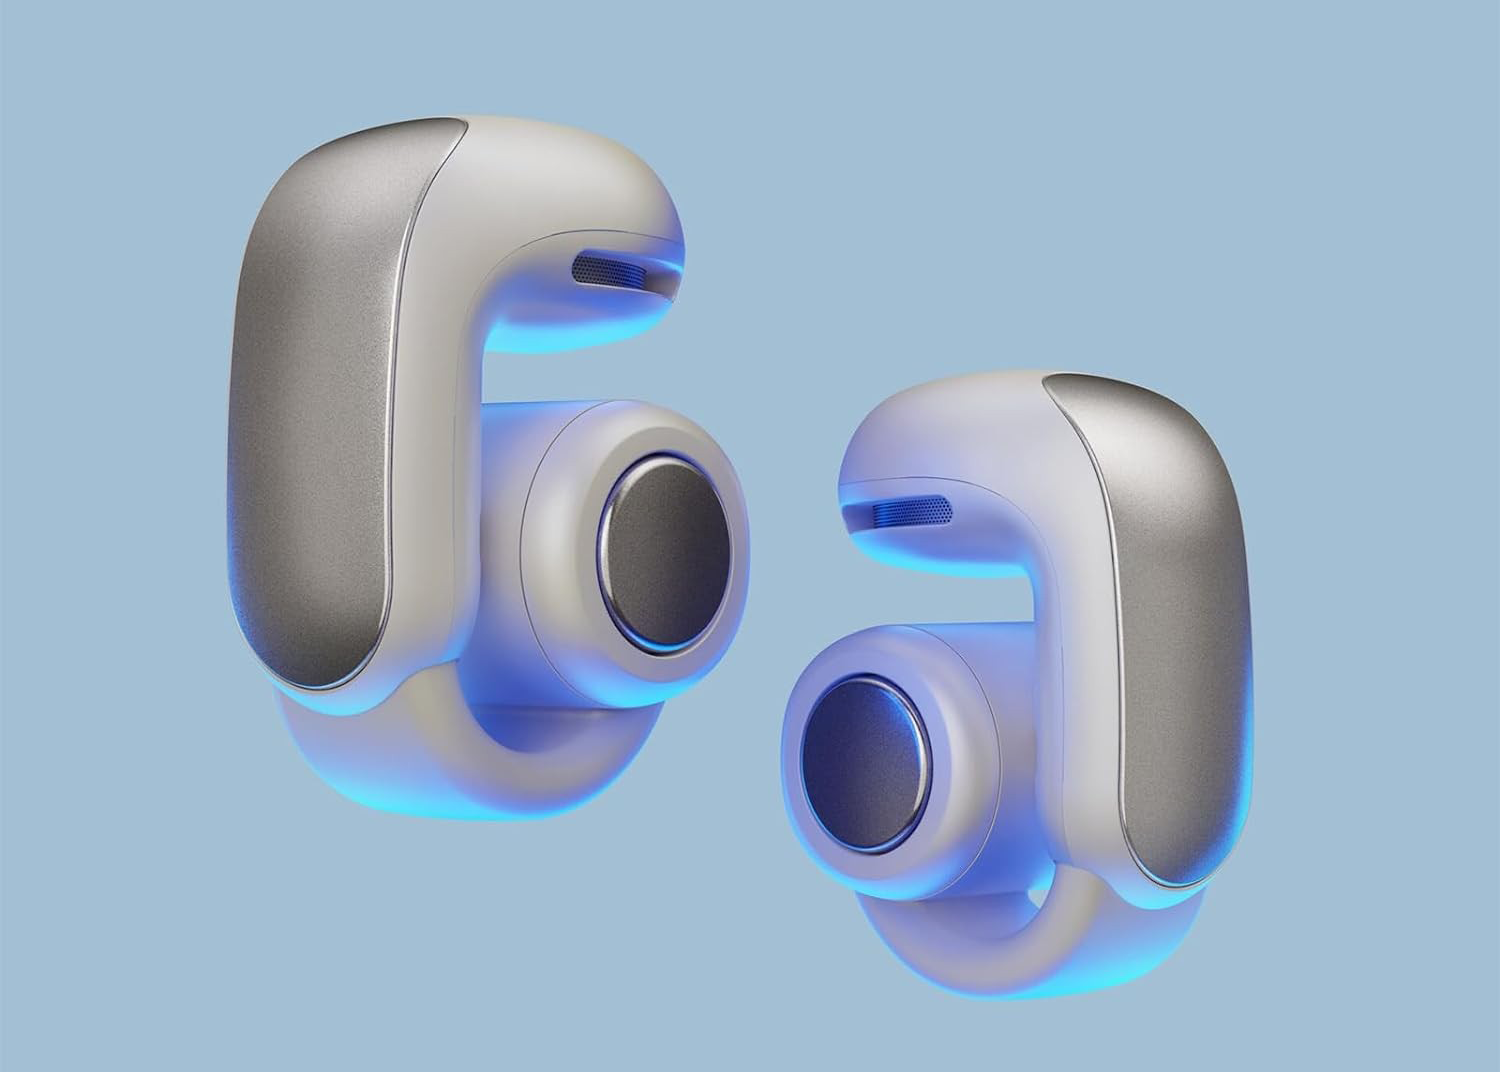 Bose Open Ultra earbuds